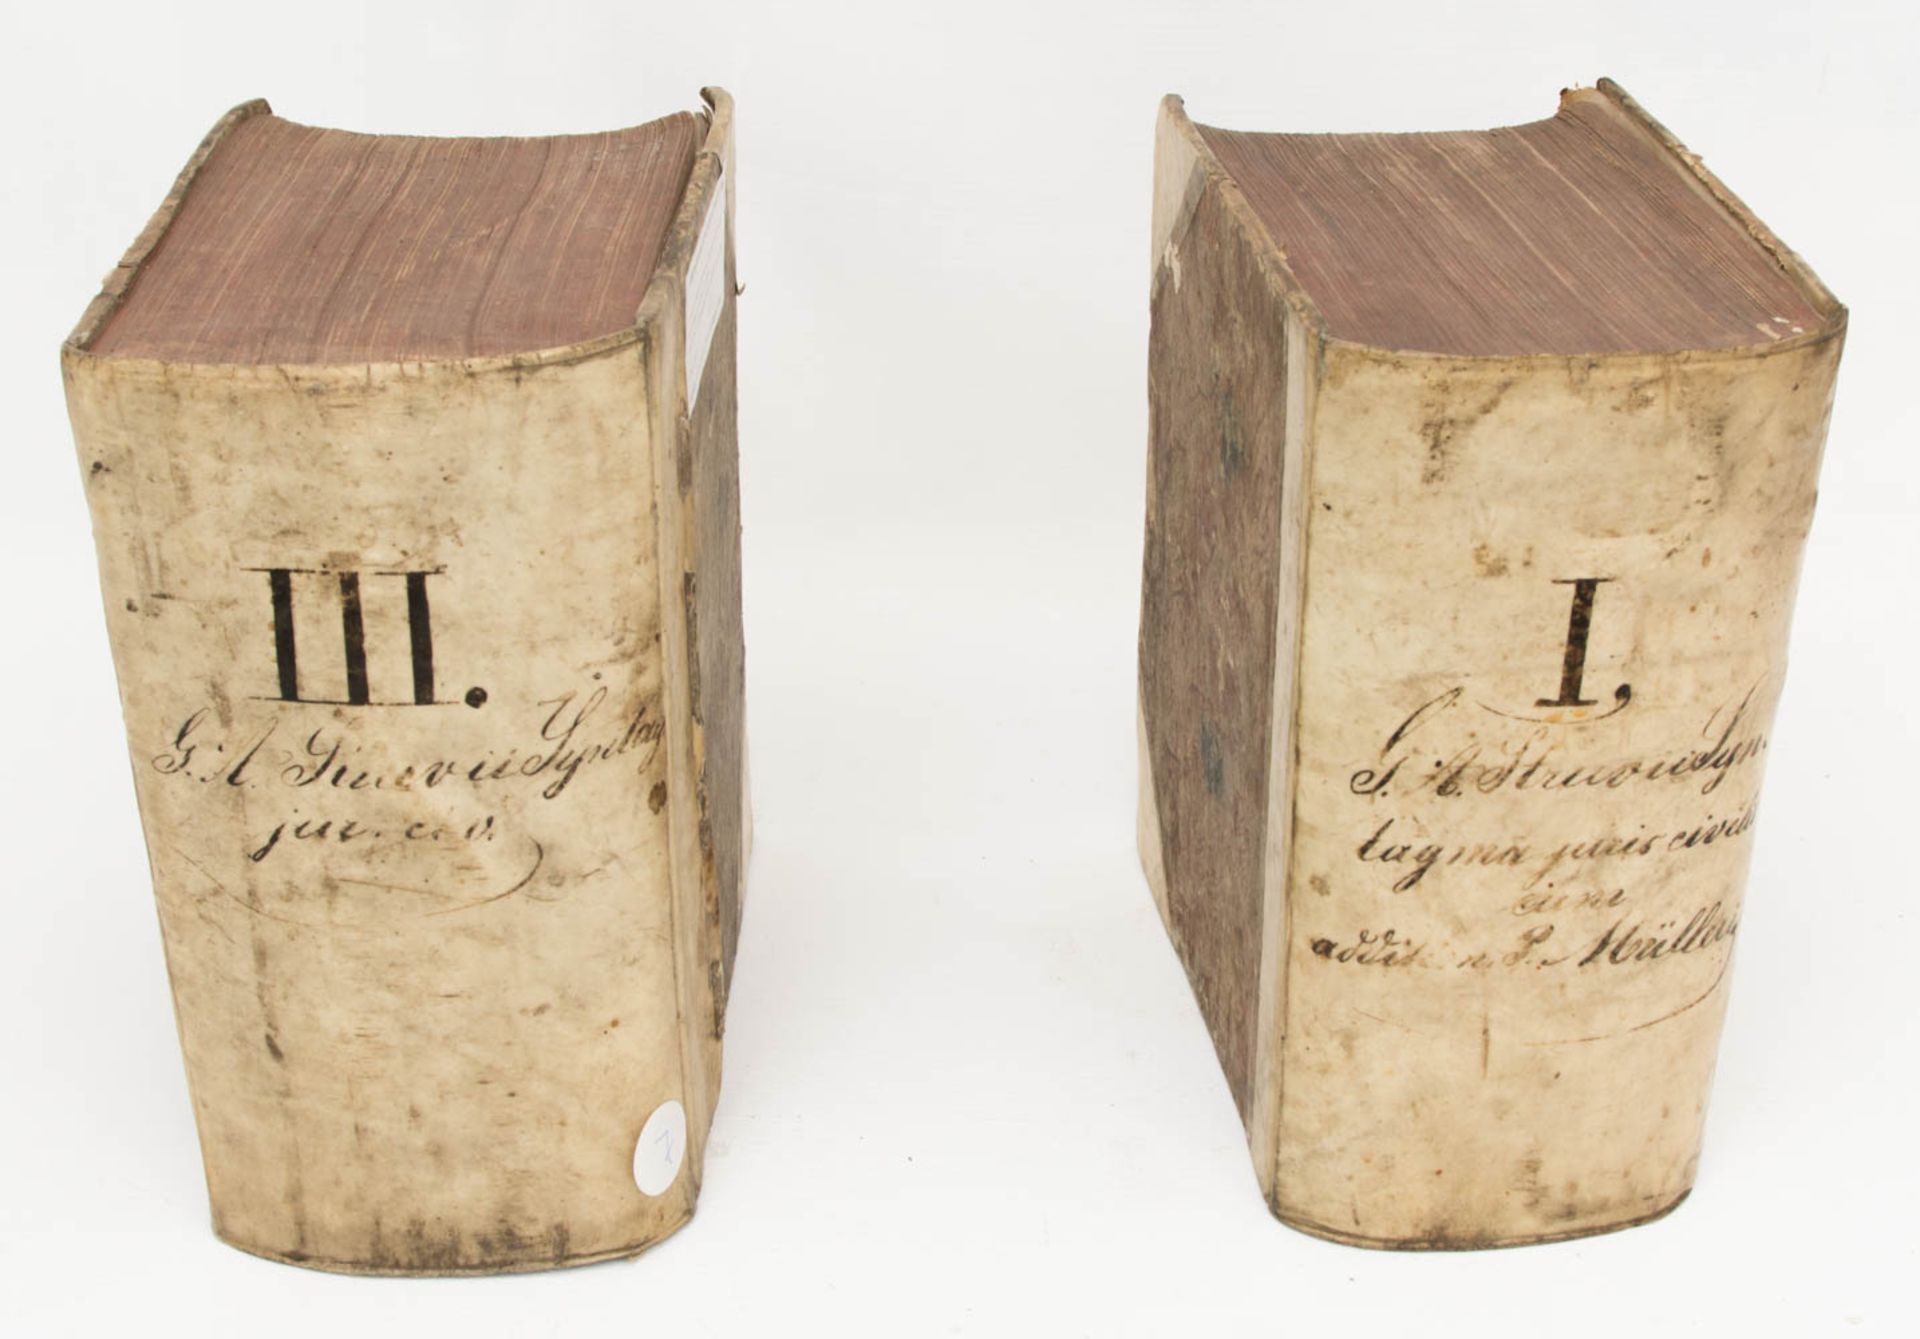 Jurisprudentiae Band 1 und 3, 1663/ 1738.Jurisprudentiae secundum ordinem pandectarum. Juris civilis